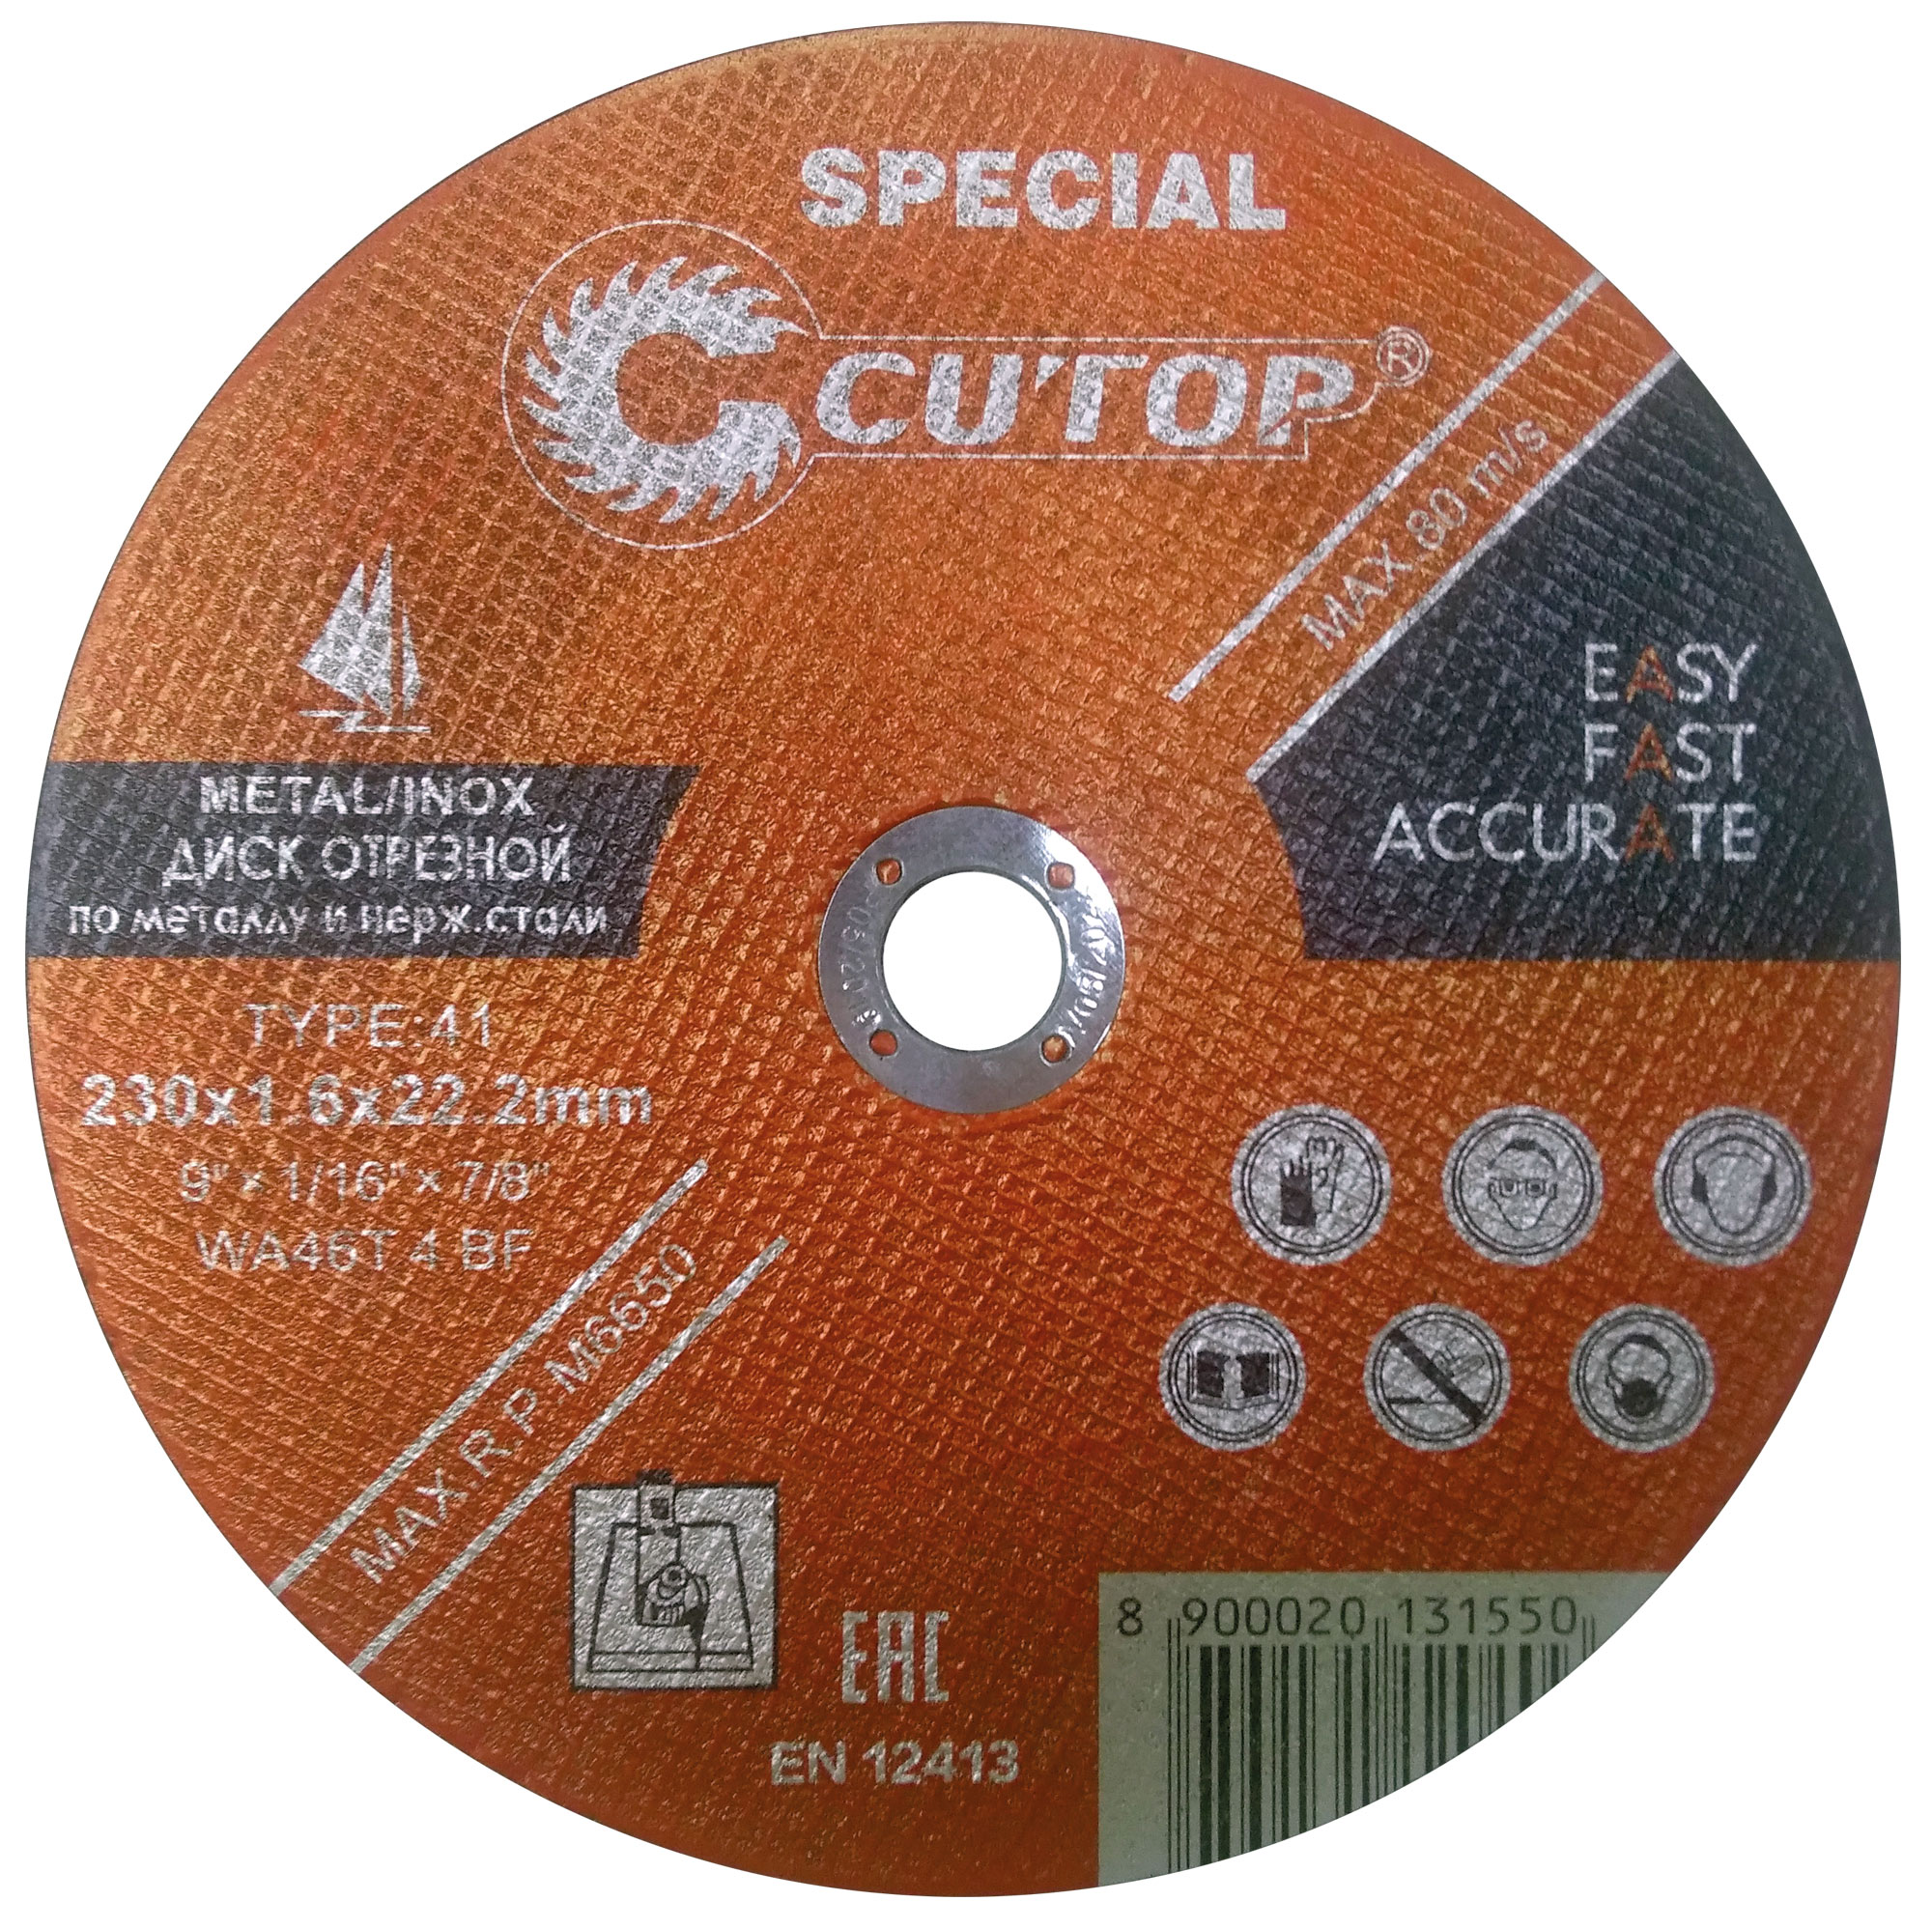 Профессиональный специальный диск отрезной по металлу и нержавеющей стали и алюминию Т41-230 х 1,6 х 22,2 мм Cutop Special